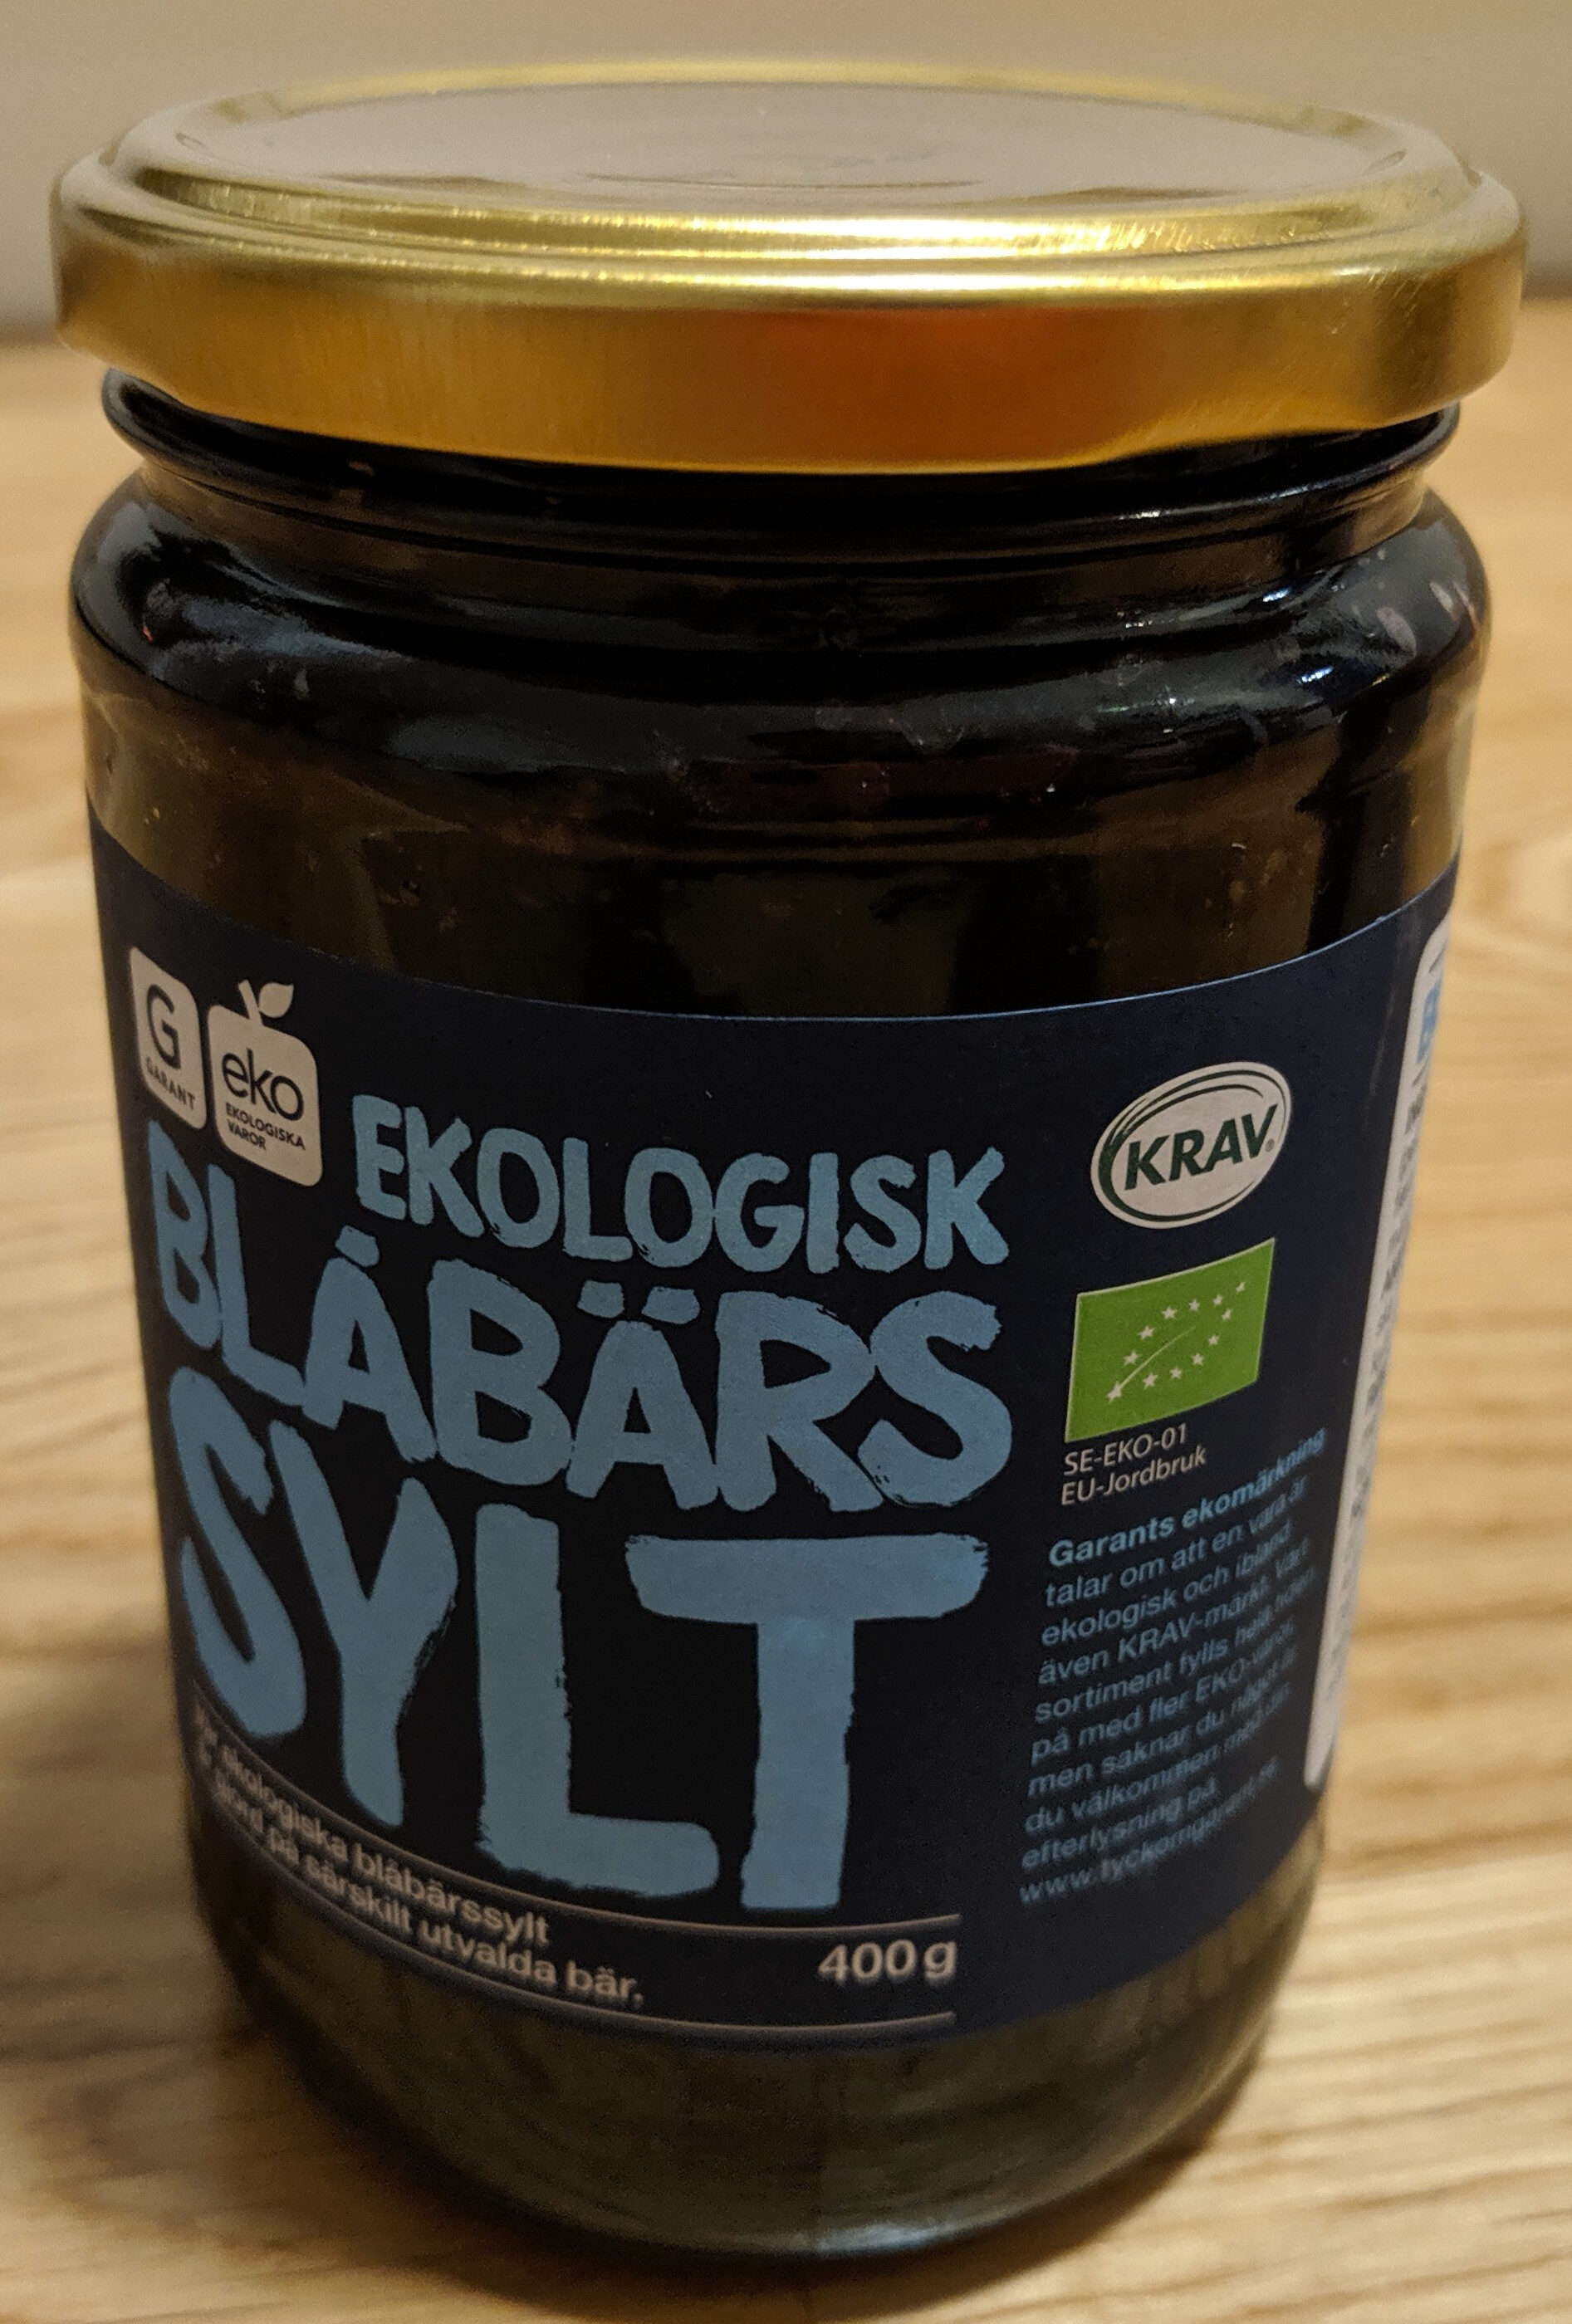 Ekologisk Blåbärs Sylt - Produkt - sv